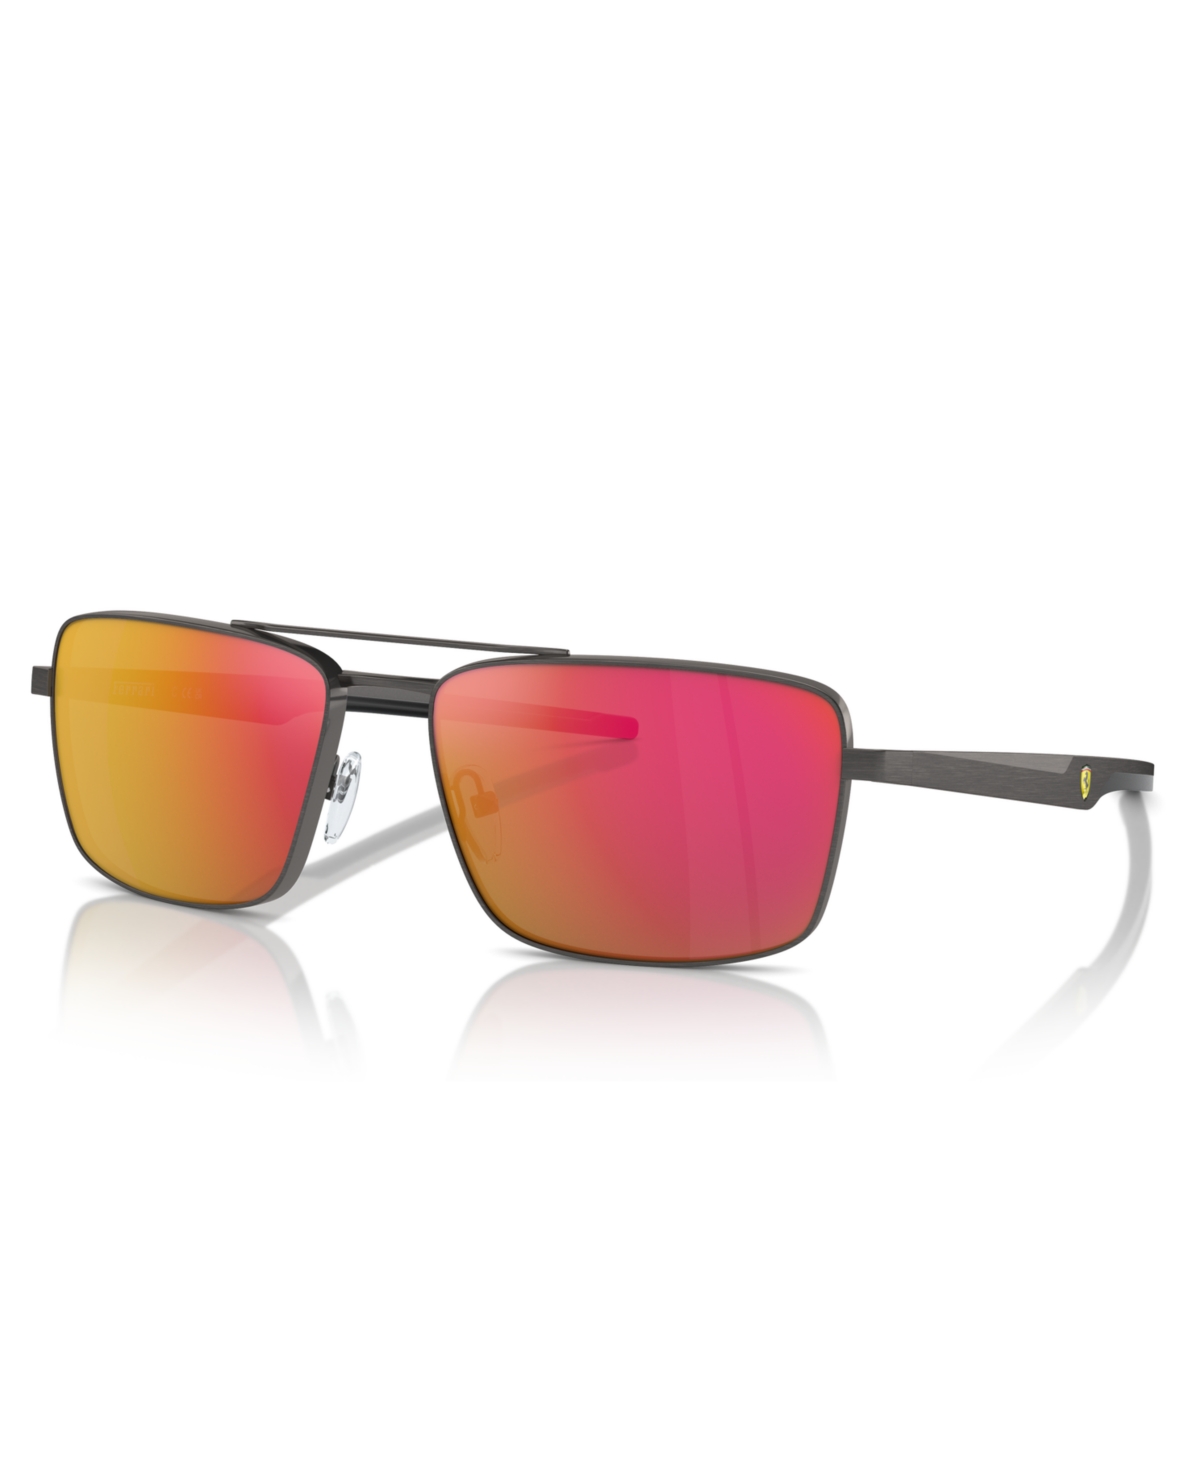 Scuderia Ferrari Men's Sunglasses, FZ5001 - Dark Gunmetal